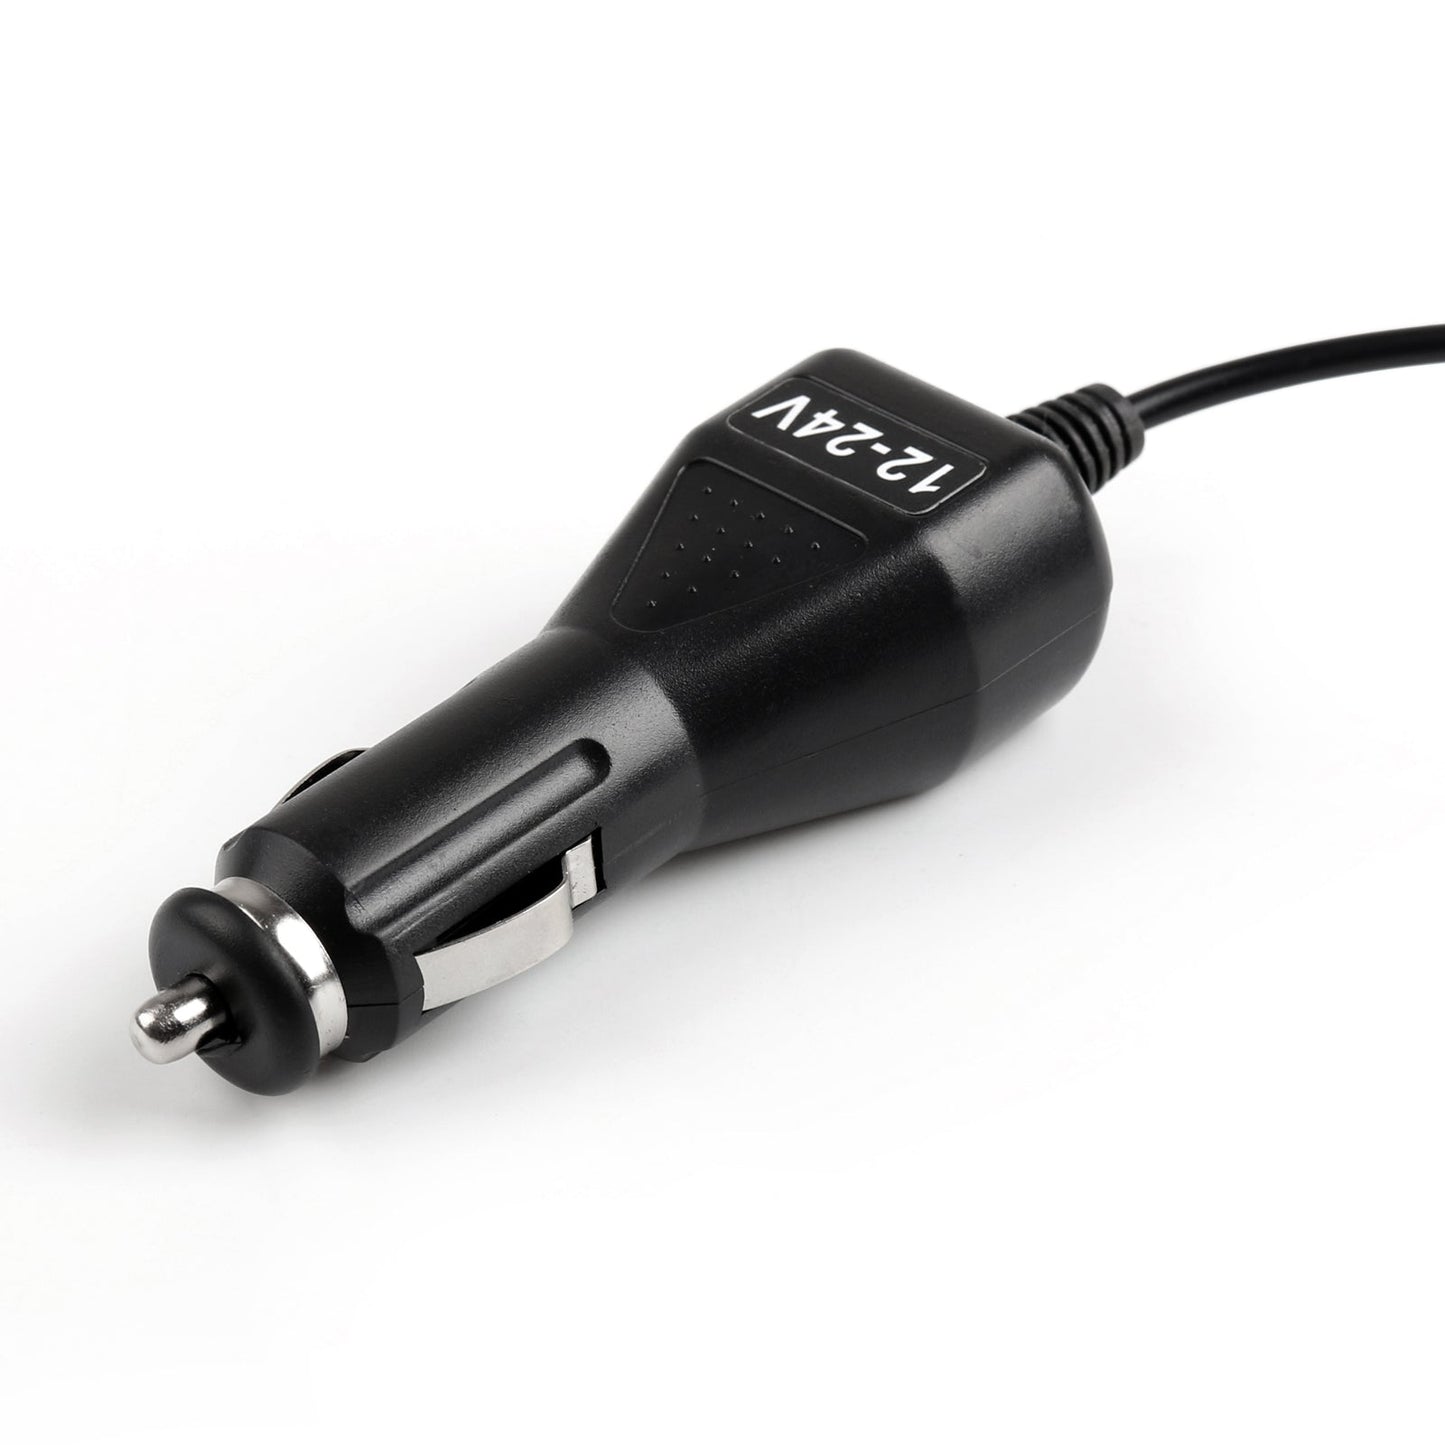 Chargeur de voiture éliminateur de batterie pour Tyt Md380 retevis rt3 rt3 talkie bidirectionnel